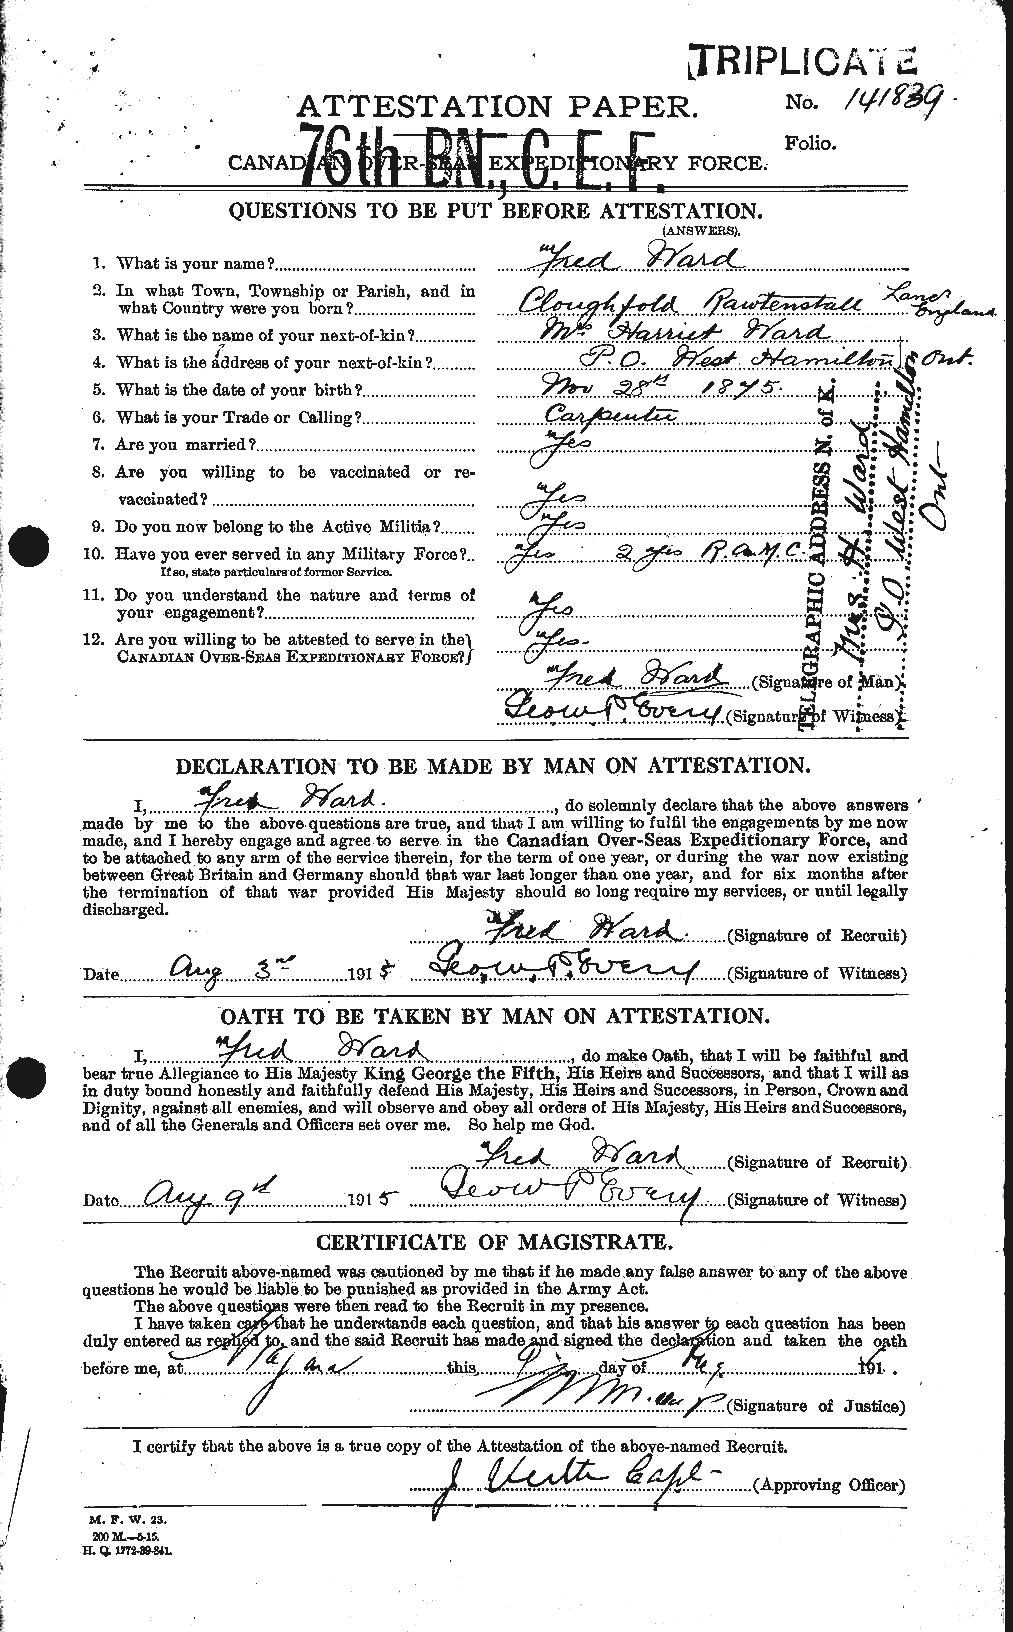 Dossiers du Personnel de la Première Guerre mondiale - CEC 657702a